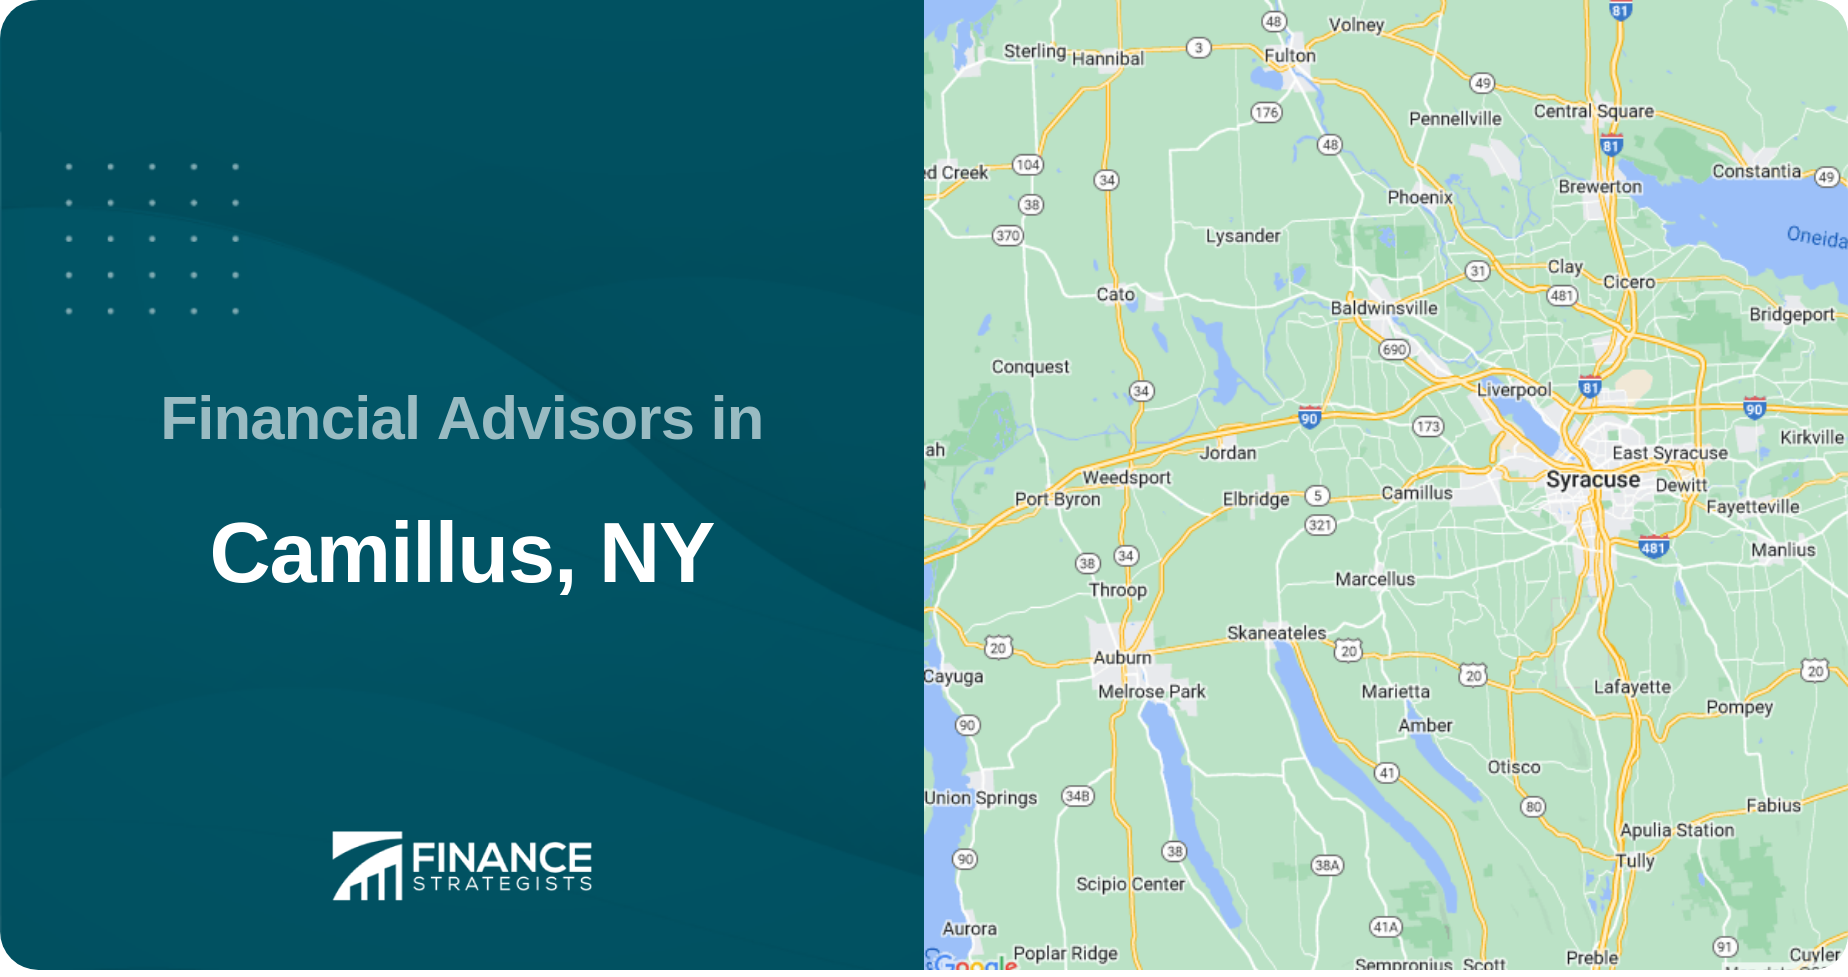 Financial Advisors in Camillus, NY